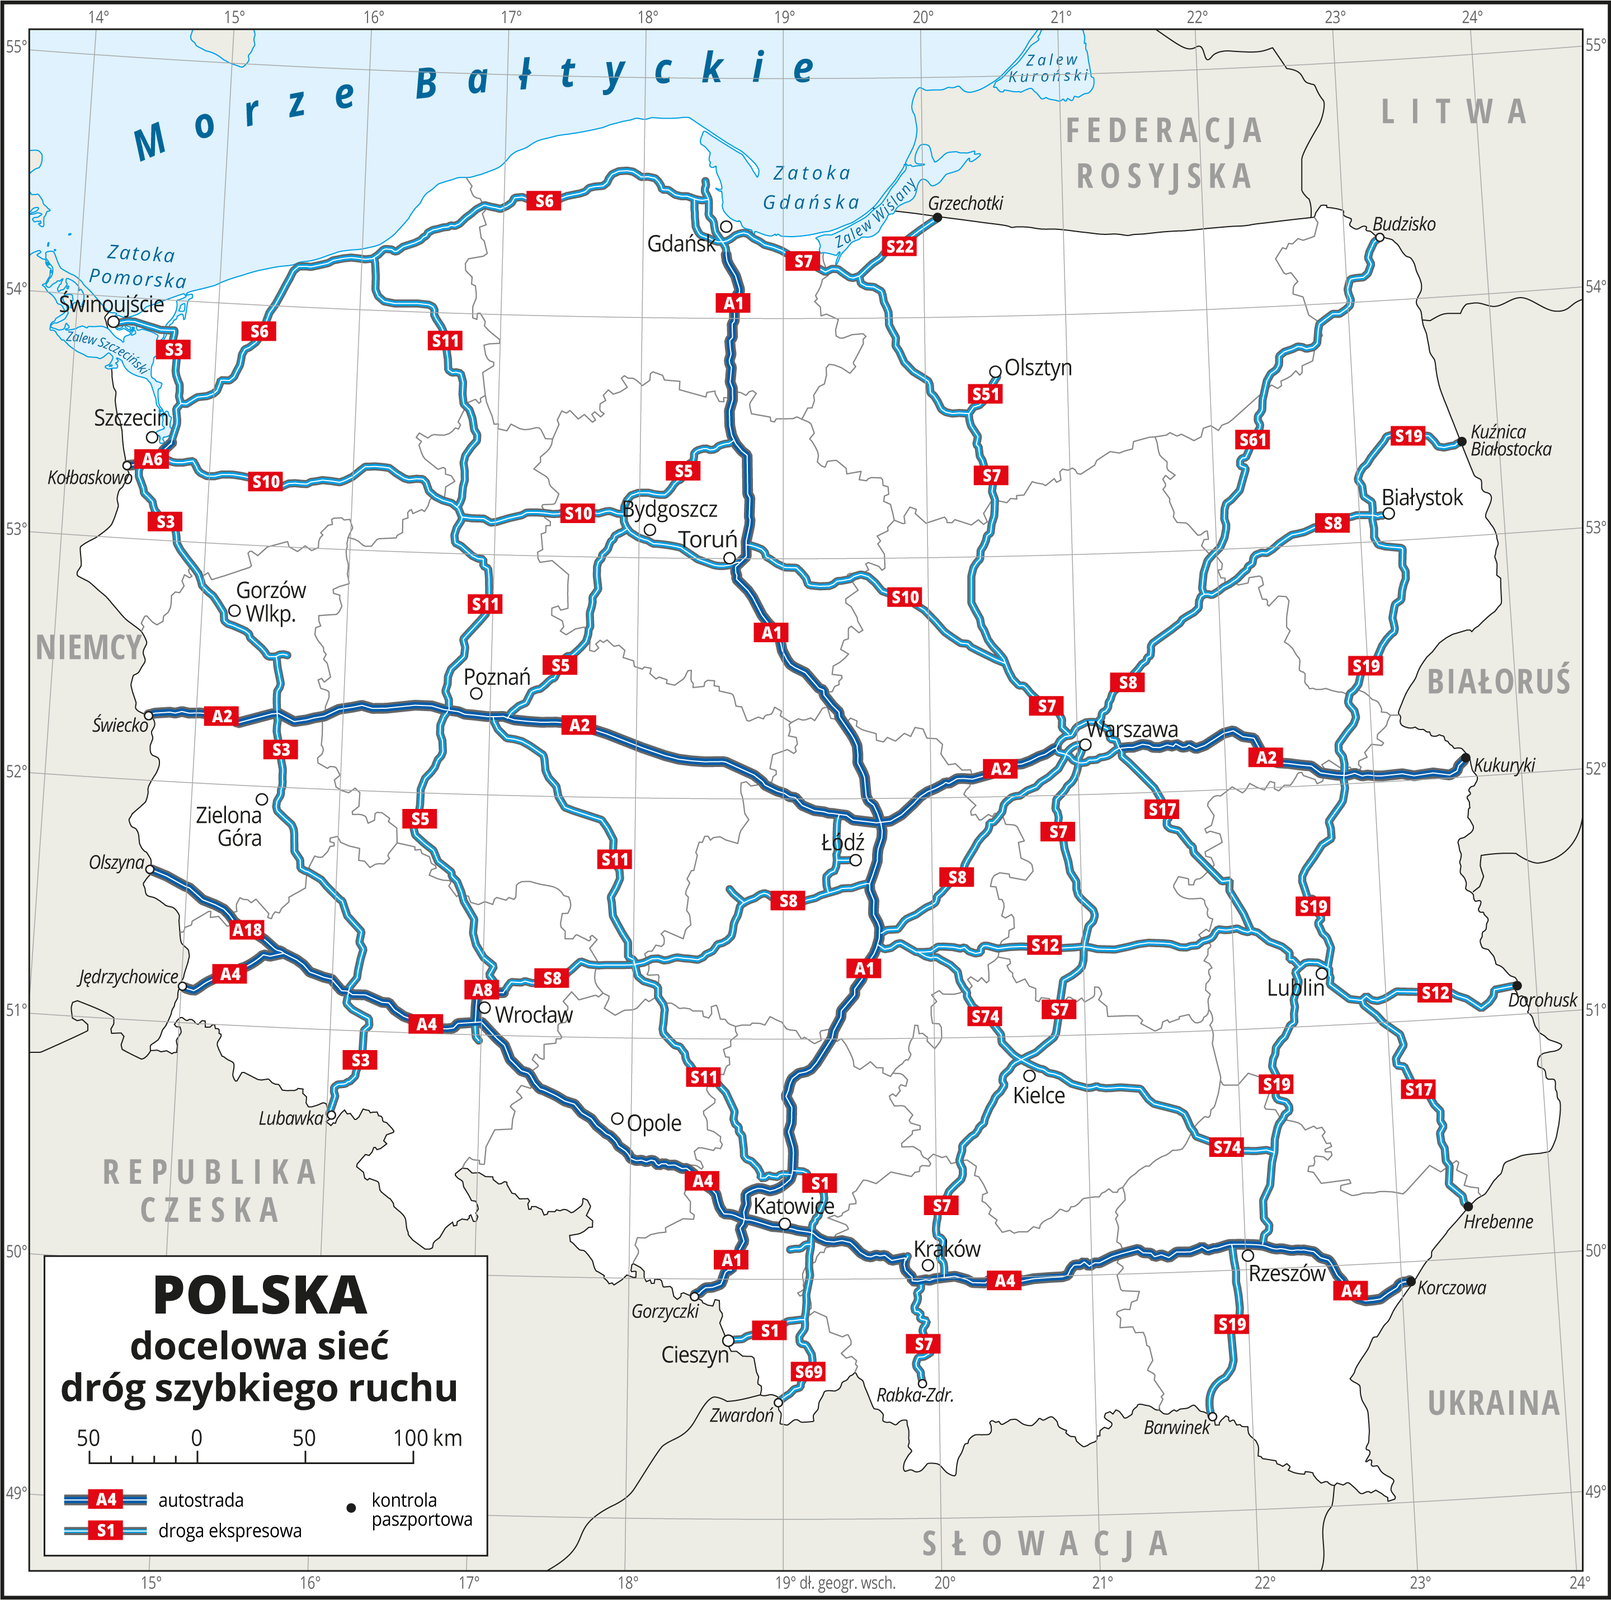 Ilustracja przedstawia mapę Polski z podziałem na województwa i obrazuje docelową sieć dróg szybkiego ruchu. Tło mapy jest w kolorze białym. Granice województw zaznaczone są szarą linią. Białymi kropkami zaznaczono miasta wojewódzkie. Czarnymi kropkami oznaczono kontrole paszportowe na wschodniej granicy Polski z Białorusią i Ukrainą. Autostrady oznaczono ciemnoniebieskimi liniami. Na mapie zobrazowano trzy autostrady: pierwsza z północy na południe na trasie Gdańsk–Katowice i dalej do granicy Polski z Czechami , druga z zachodu na wschód w centralnej części Polski ze Świecka przez Poznań, Łódź i Warszawę do Kukuryków na granicy z Białorusią, trzecia z zachodu na wschód na południu Polski – z Olszyny i Jędrzychowic przez Katowice, Kraków i Rzeszów do Korczowej na granicy z Ukrainą. Drogi ekspresowe oznaczono kolorem jasnoniebieskimi. Ich sieć łączy głównie miasta wojewódzkie. Są rozmieszczone równomiernie, najrzadsza sieć tych dróg jest na północnym-wschodzie na Pomorzu Mazurskim. Na autostradach i drogach ekspresowych umieszczono czerwone tabliczki z numerami dróg. Mapa pokryta jest równoleżnikami i południkami. Dookoła mapy w białej ramce opisano współrzędne geograficzne co jeden stopień. W legendzie opisano znaki użyte na mapie.